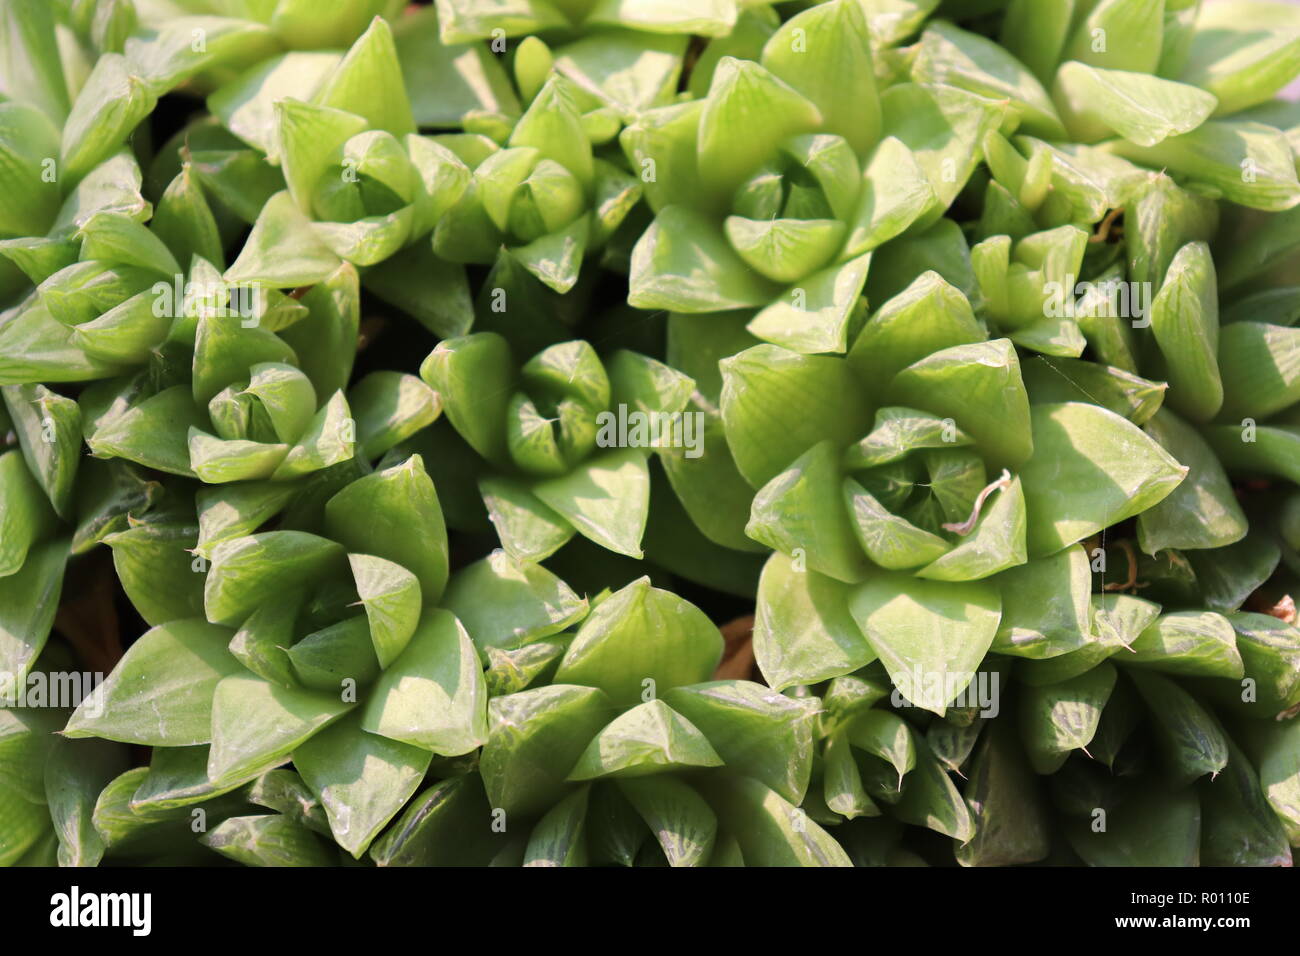 Allied plantas suculentas son hojas carnosas de color verde claro Foto de stock